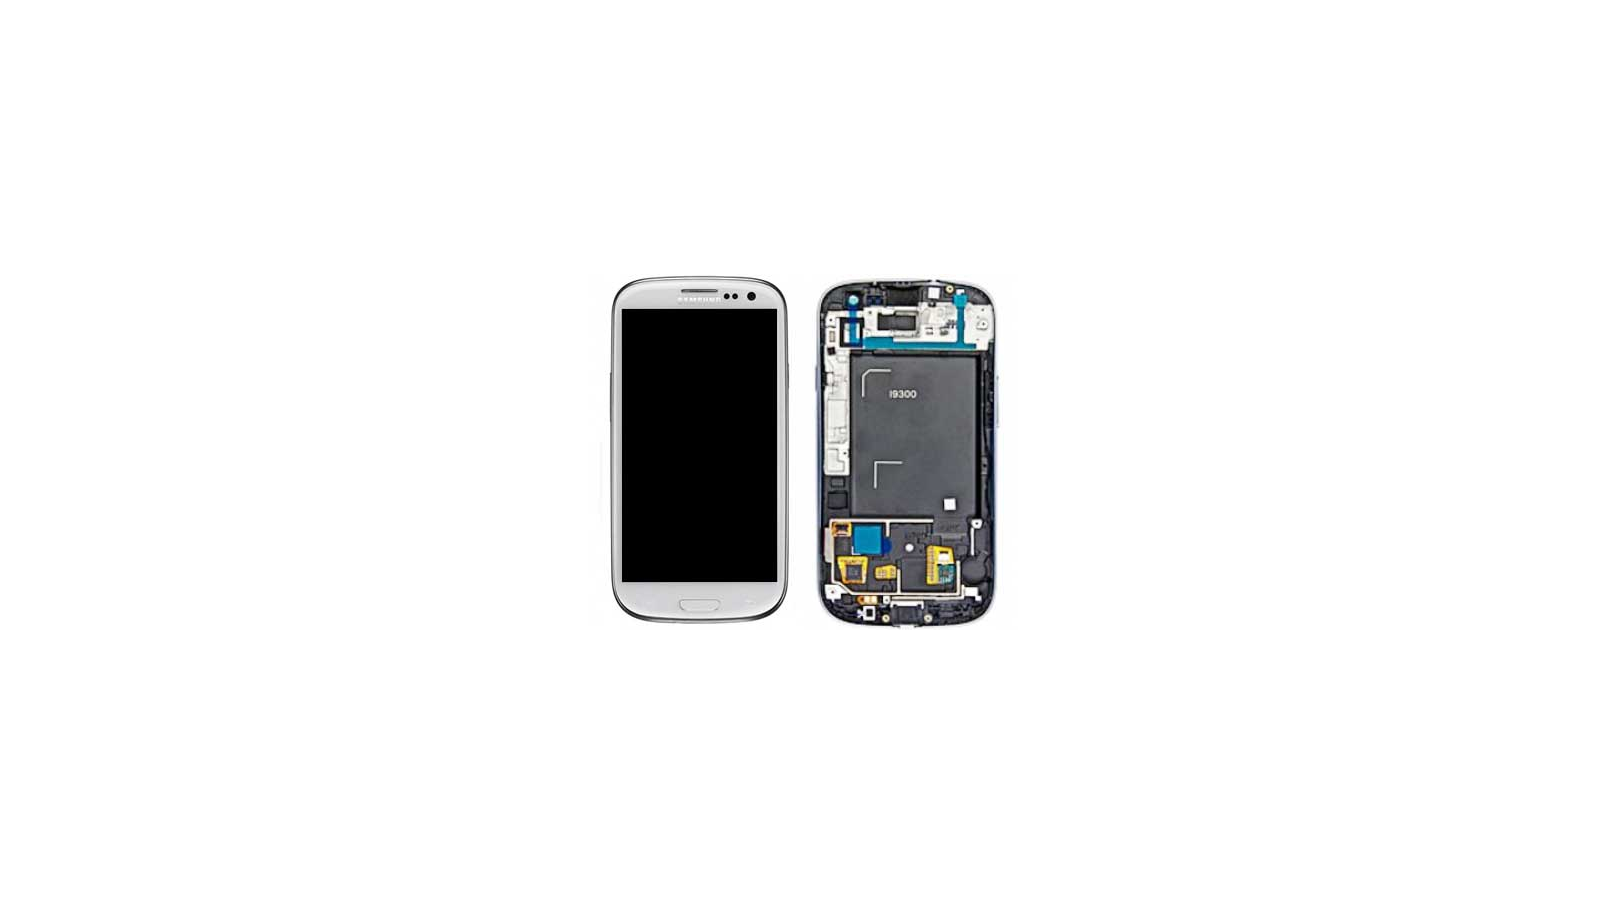 Display Lcd Hd completo di Touch screen e vetro Samsung Galaxy S3 i9300 Bianco